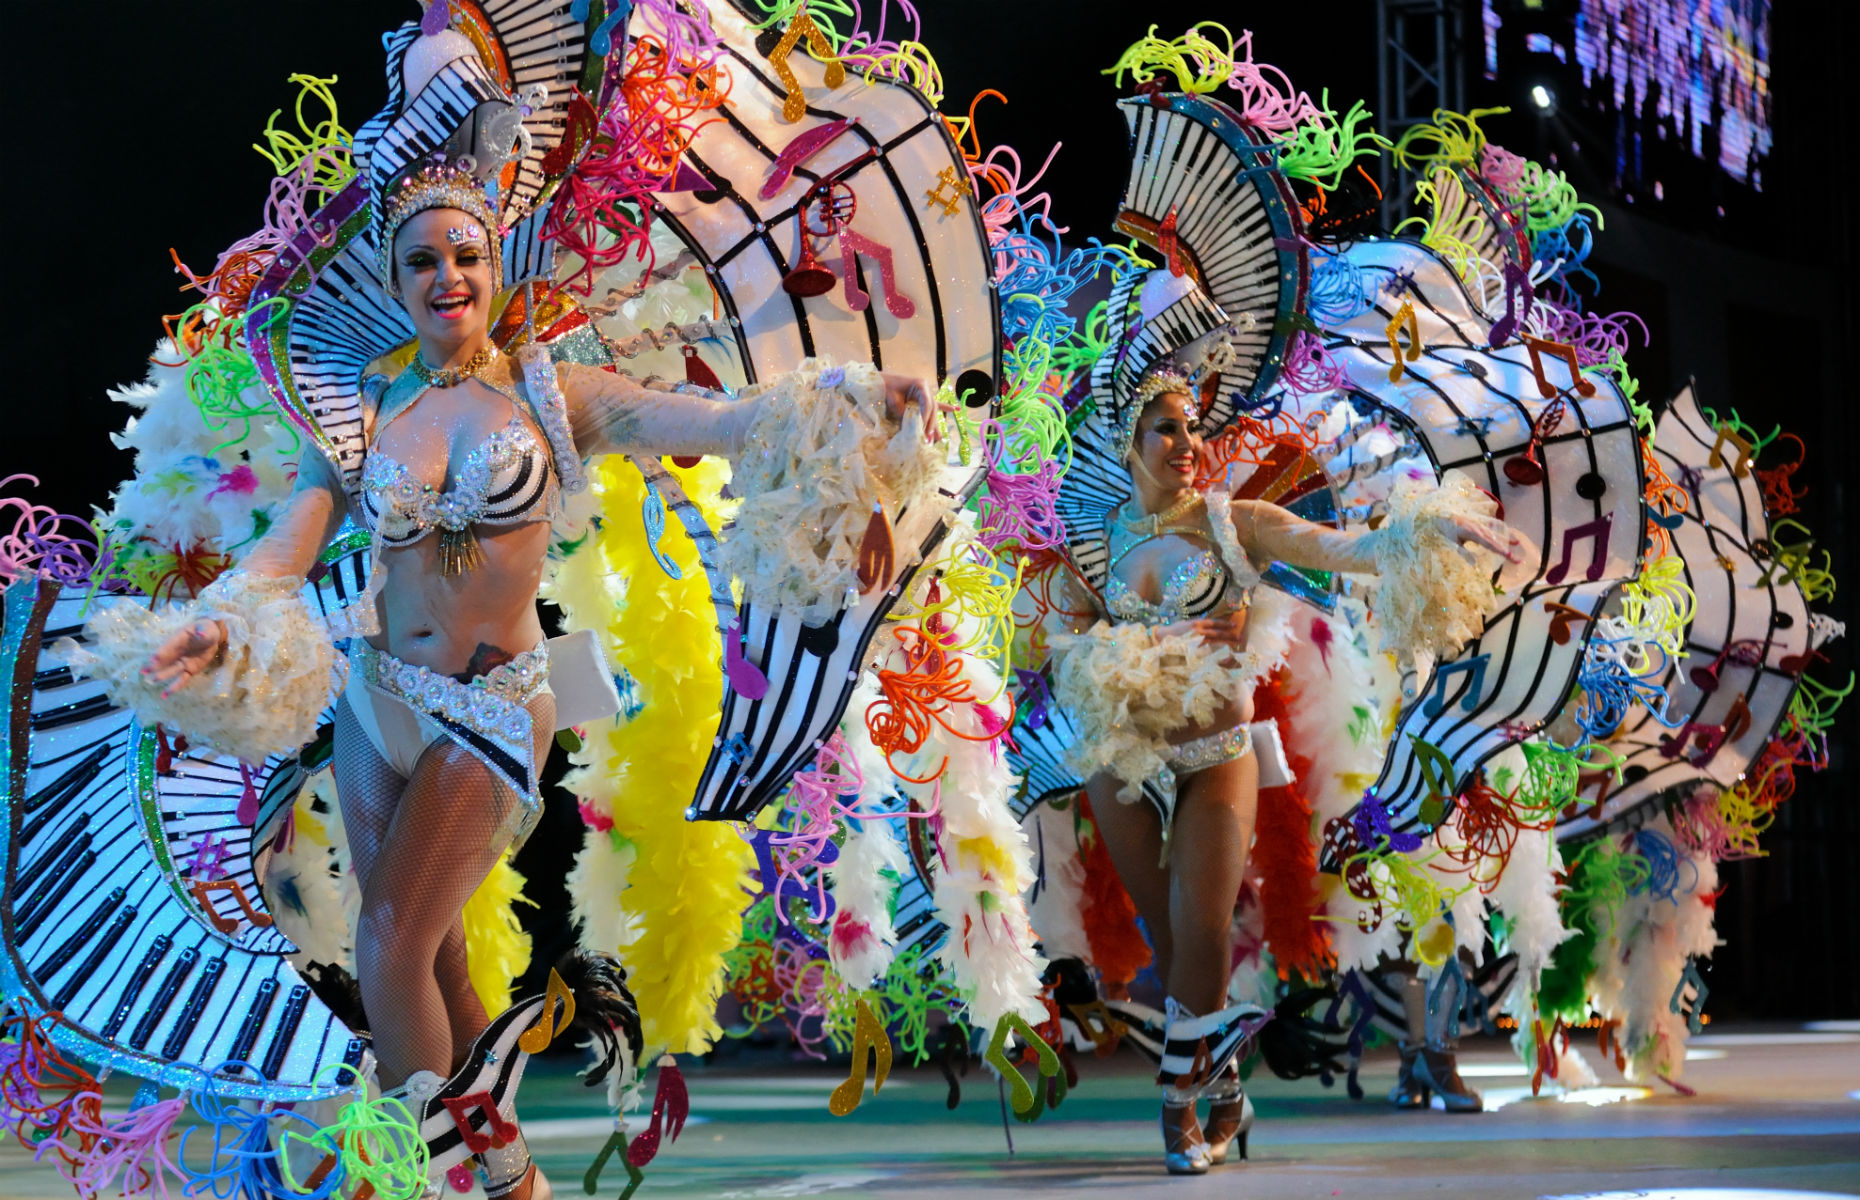 Tenerife carnival (Image: Luciano de la Rosa/Shutterstock)